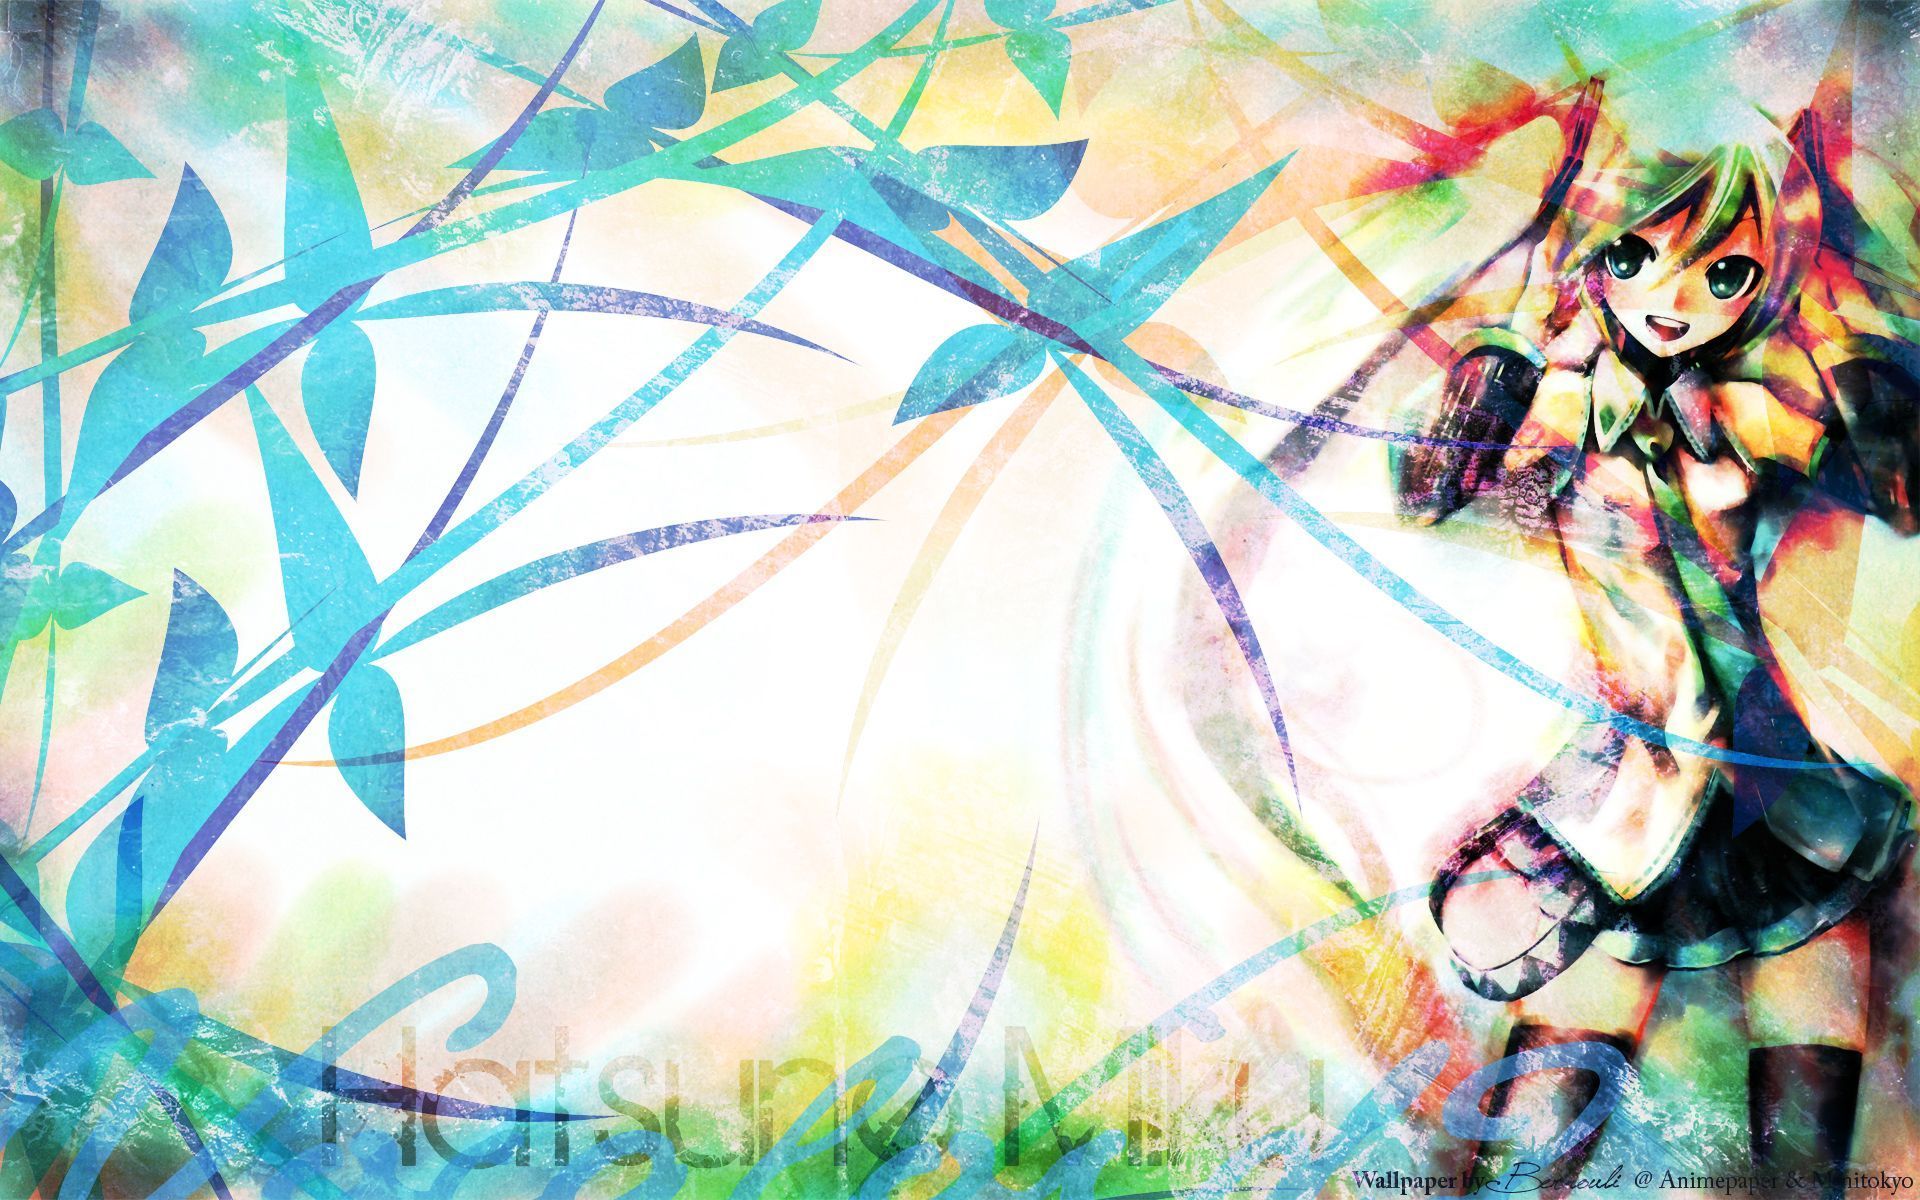 Hatsune Miku Wallpaper 1920x1200 ID25506